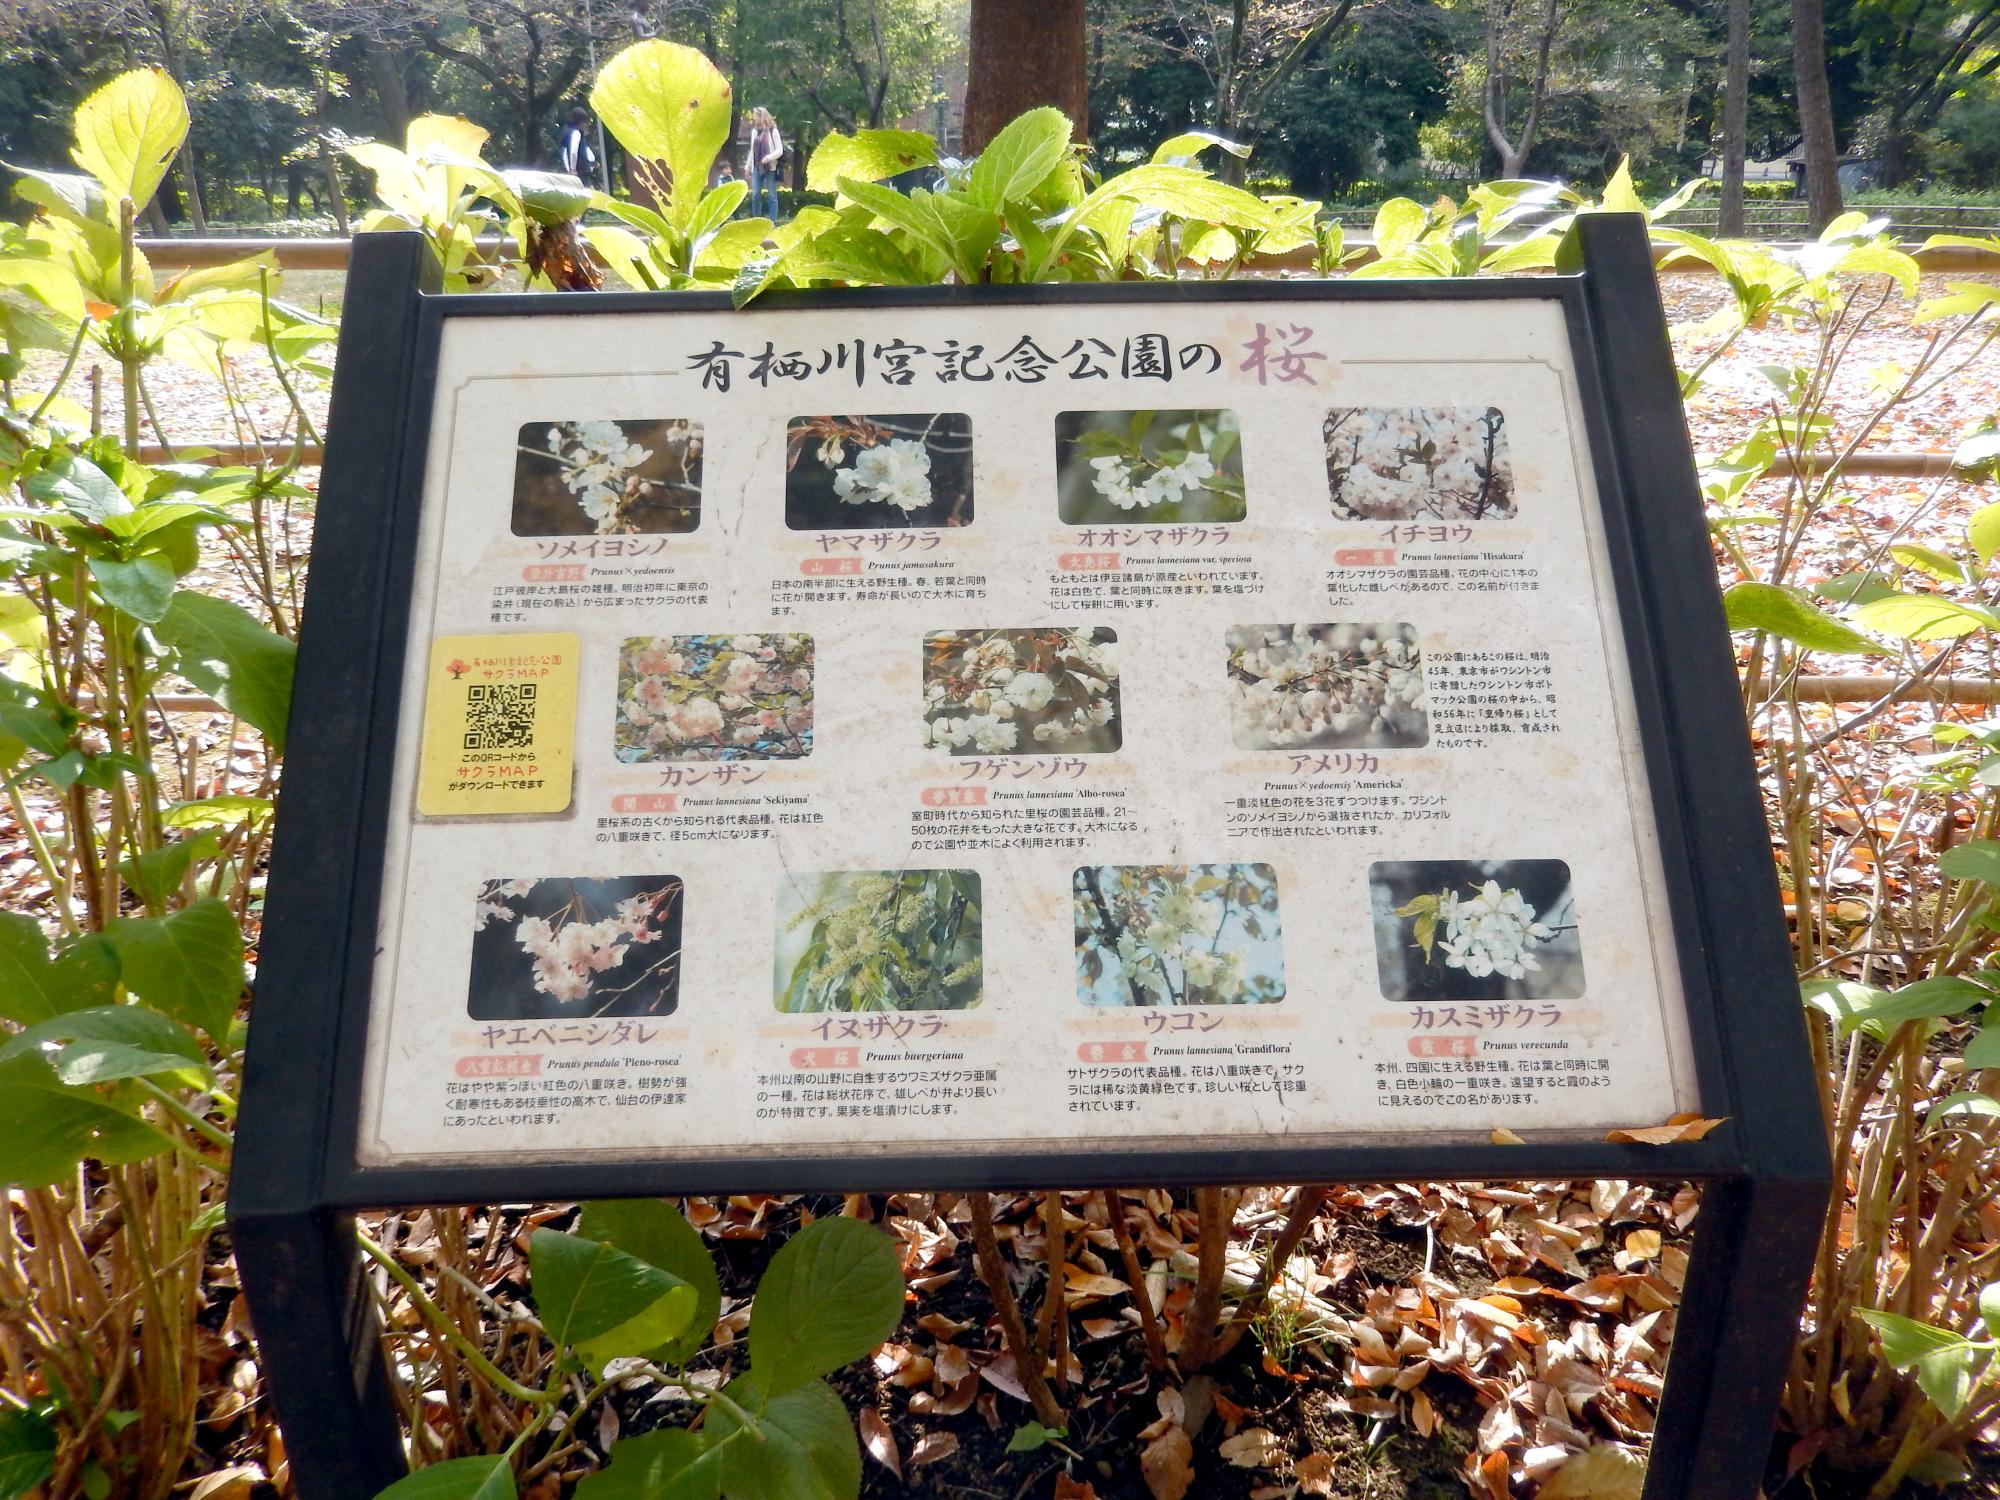 Signs Of Japan - Arisugawa Park Signs #5